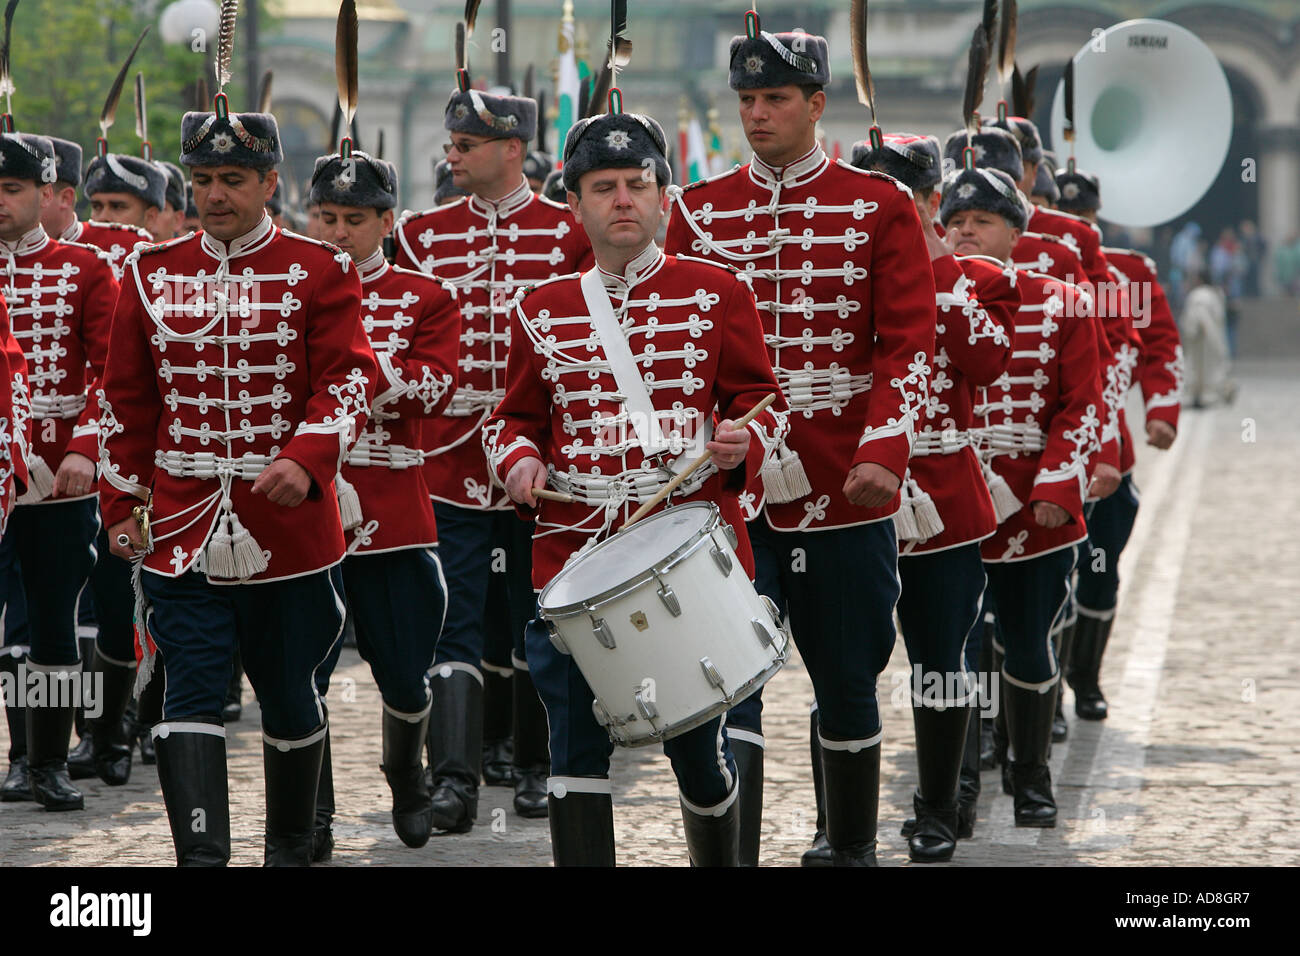 Jugar brass band ceremonias ceremonia musical instrumentos musicales entretienen a golpe de sonido guardias marzo en el paso en el desfile militar Foto de stock